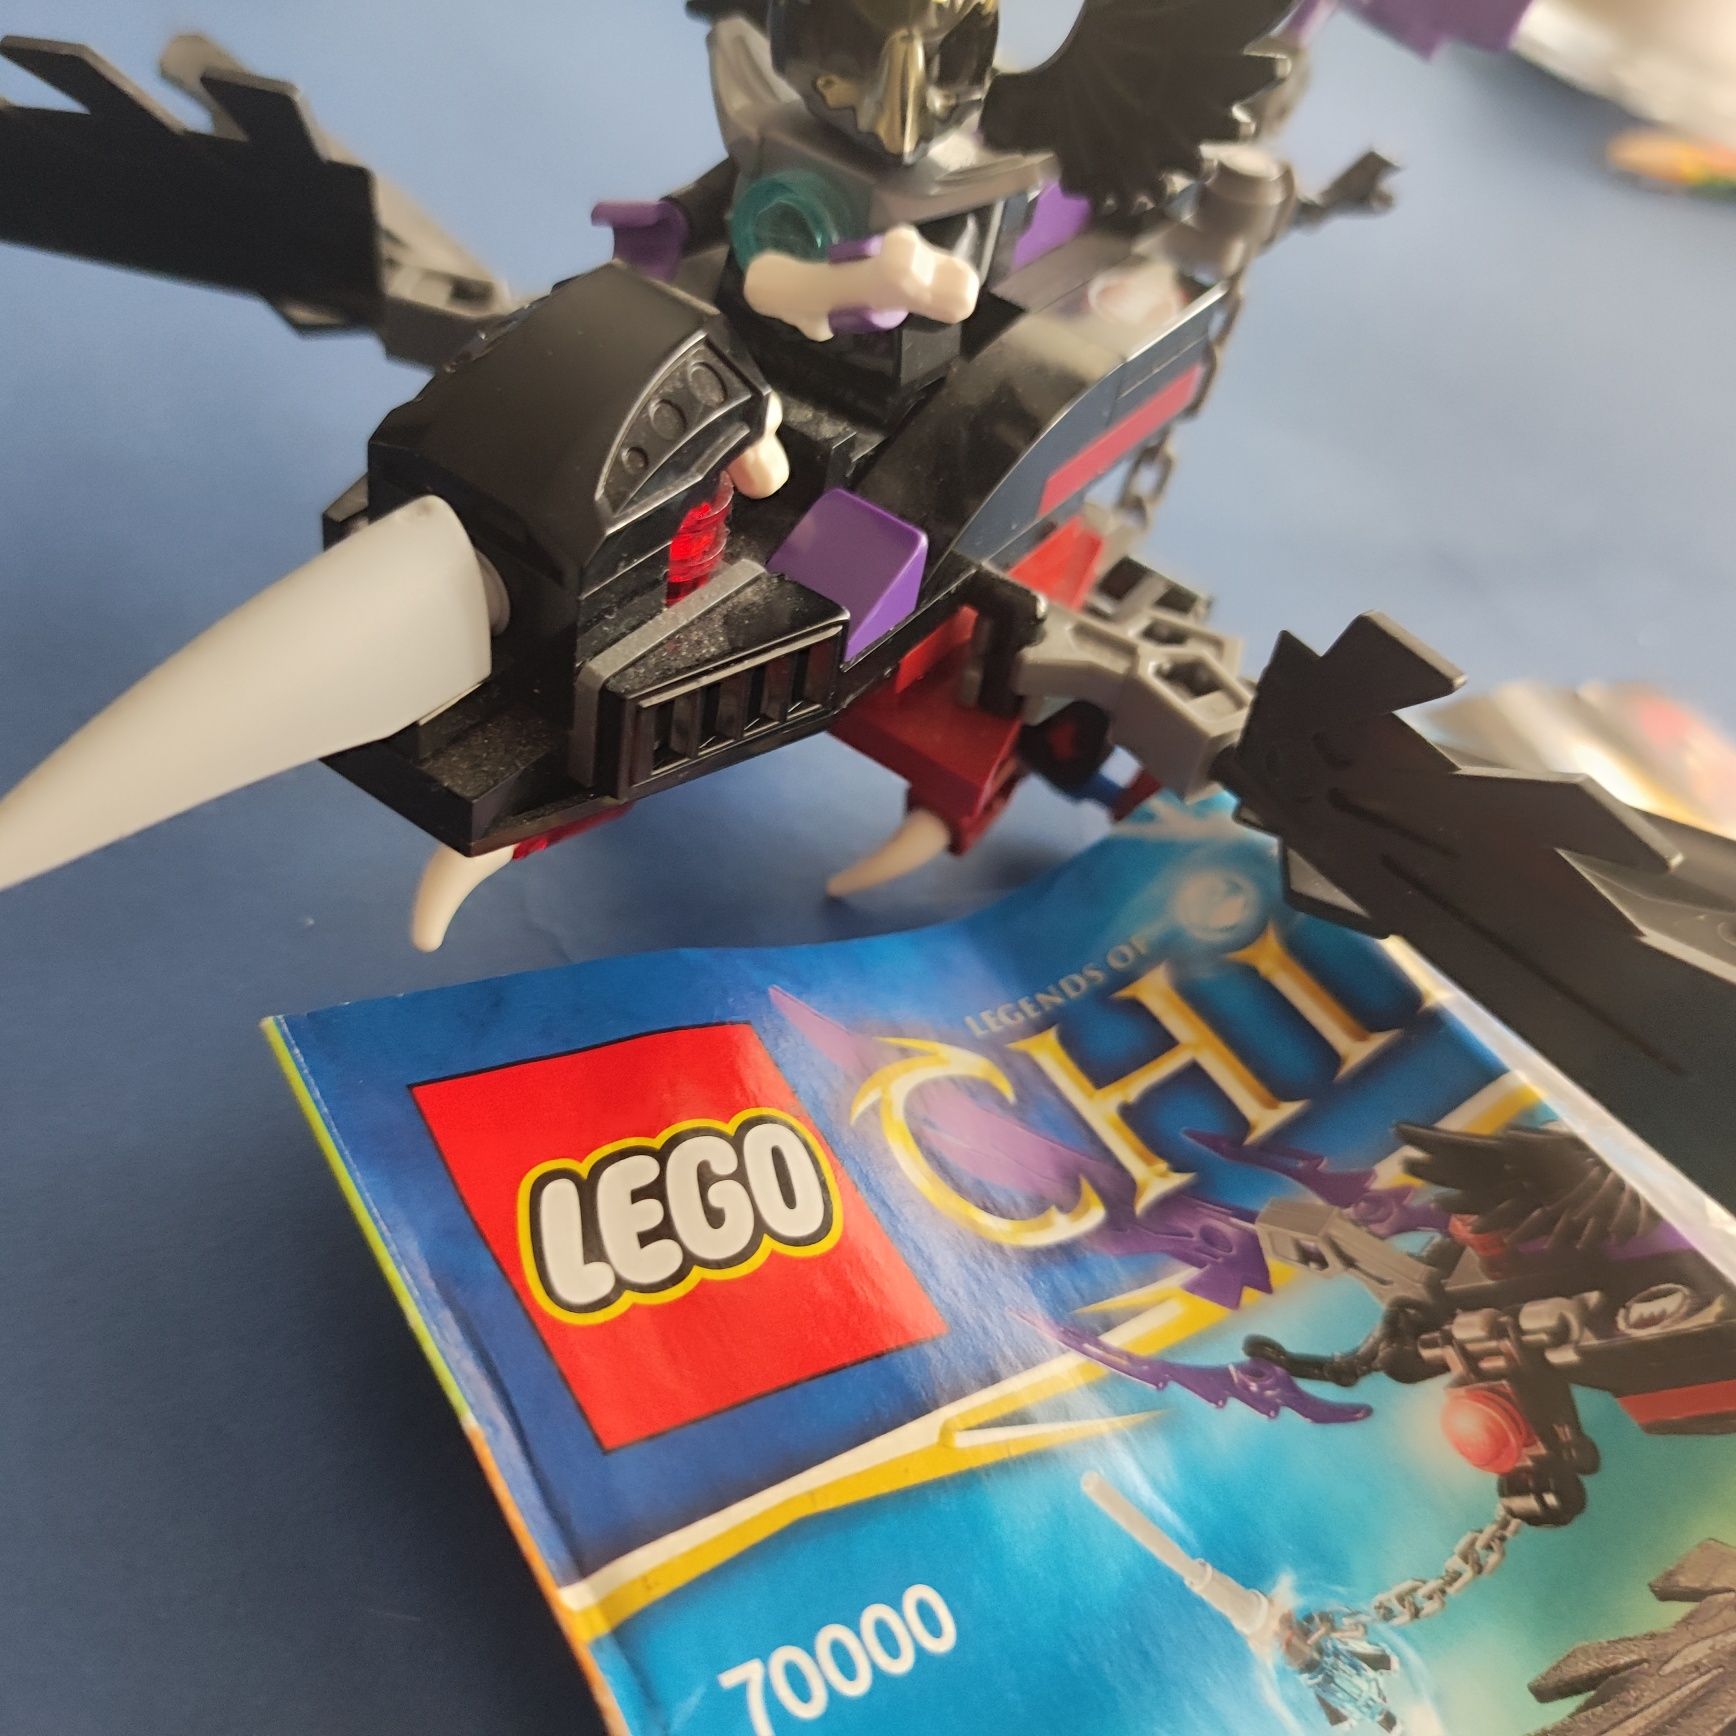 zestaw Lego chima 7000